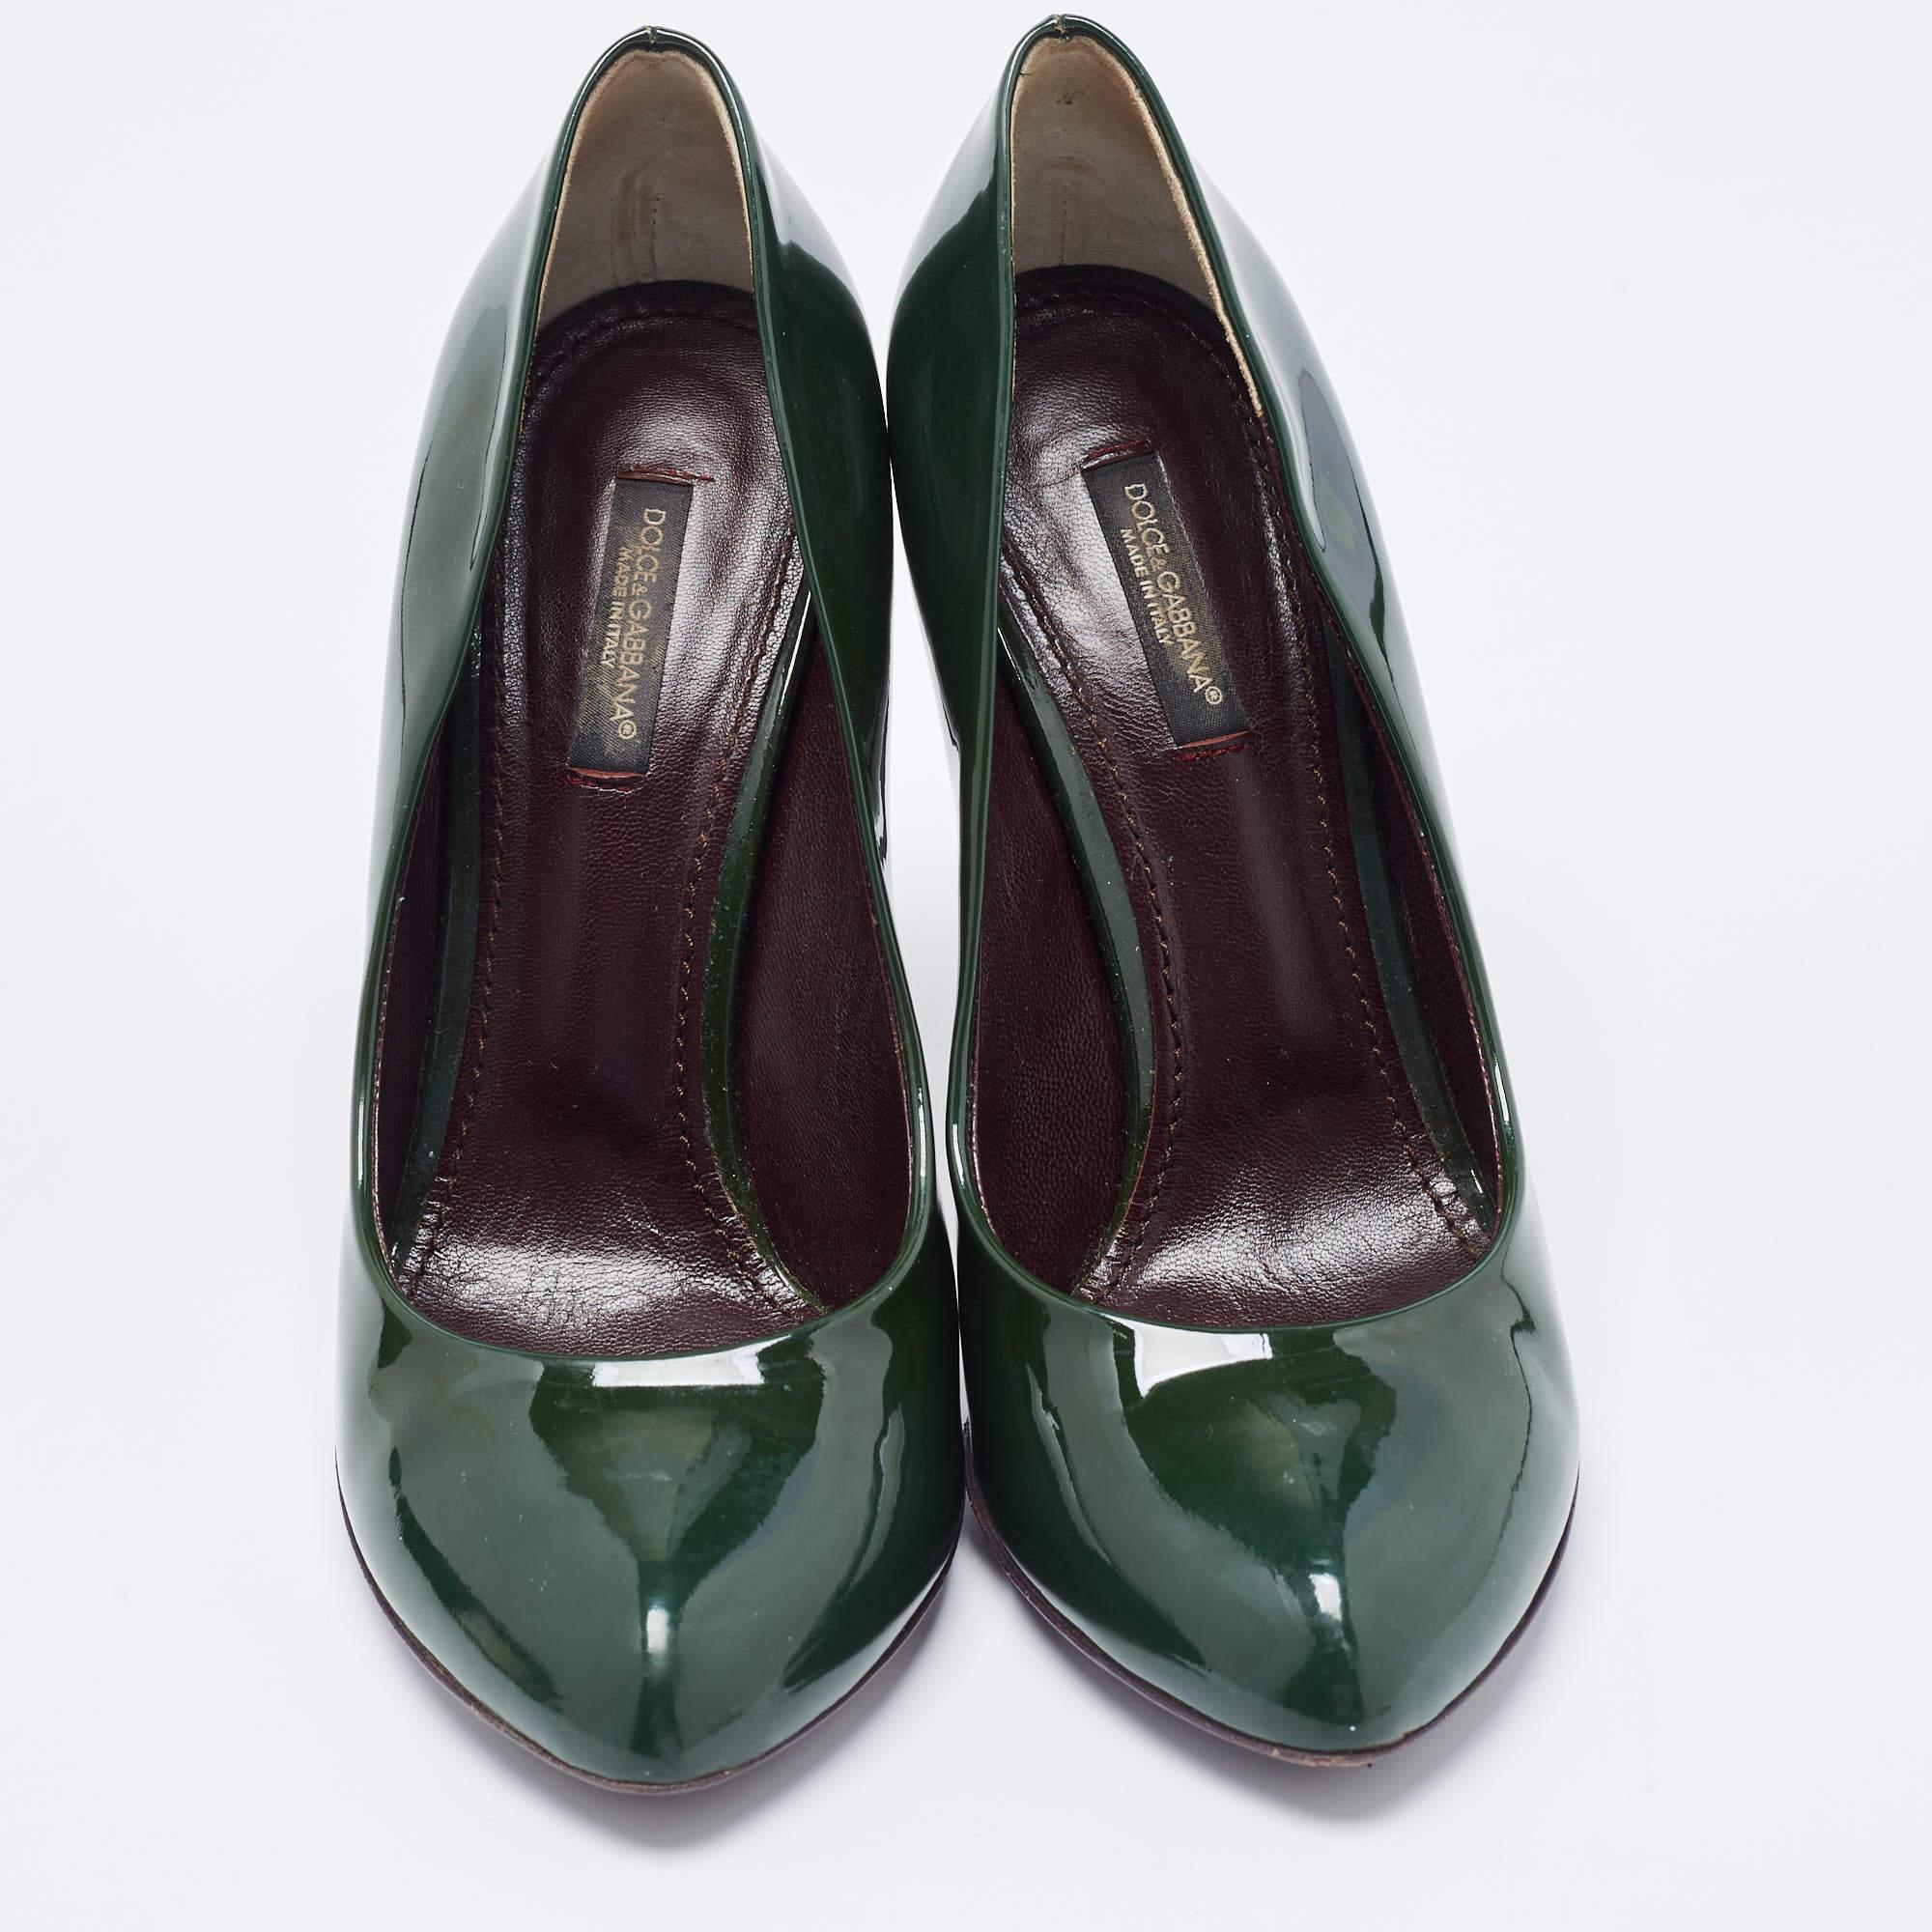 Dolce & Gabbana Green Patent Leather Almond Toe Pumps Size 37.5 In Good Condition For Sale In Dubai, Al Qouz 2